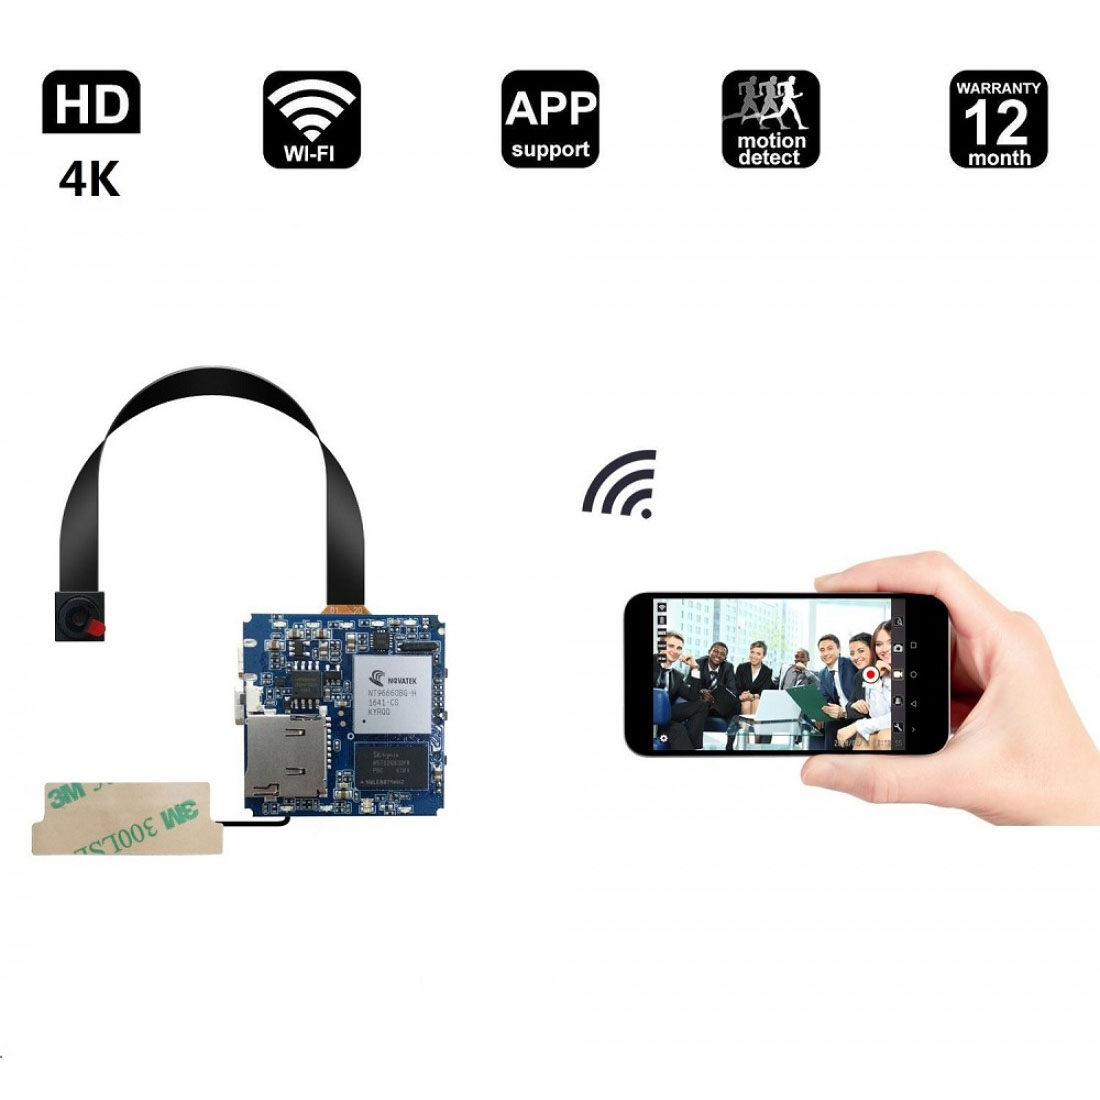 4K mini kamera, Full 1080p HD rejtett kamera, vezeték nélküli WIFI [Mozgásérzékelés, barkácskamera, alkalmazásvezérlés] Nanny cam |Otthon, gyerekek, baba, kisállatfigyelő kamera